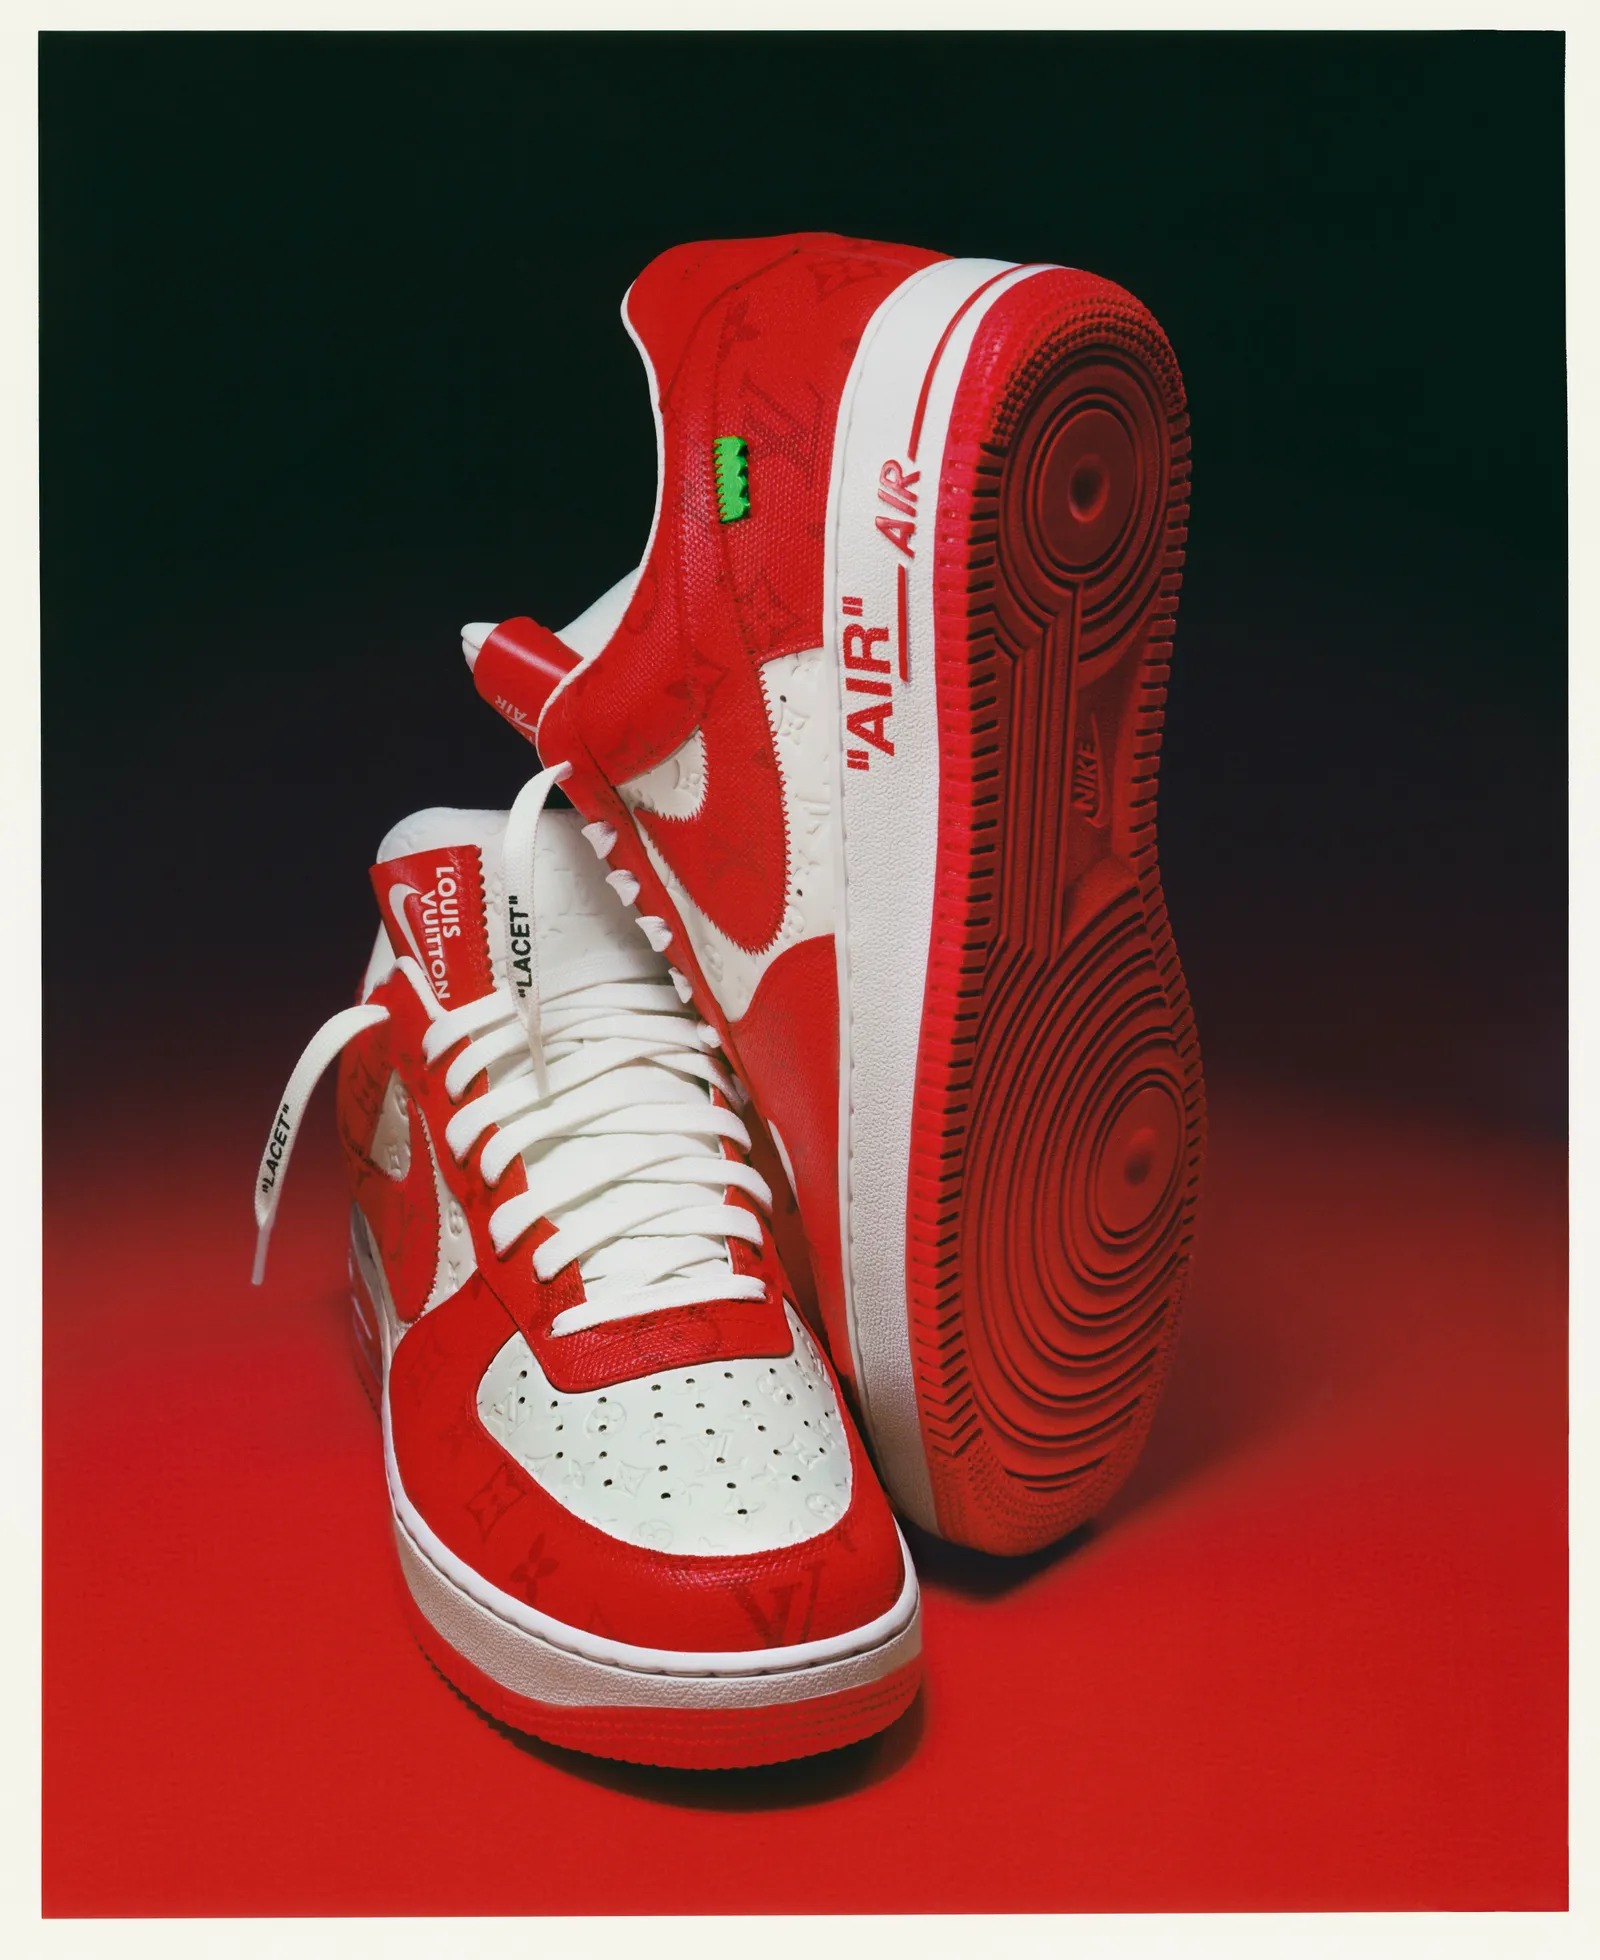 Las Nike Air Force 1 x Louis Vuitton de Virgil Abloh salen a subasta